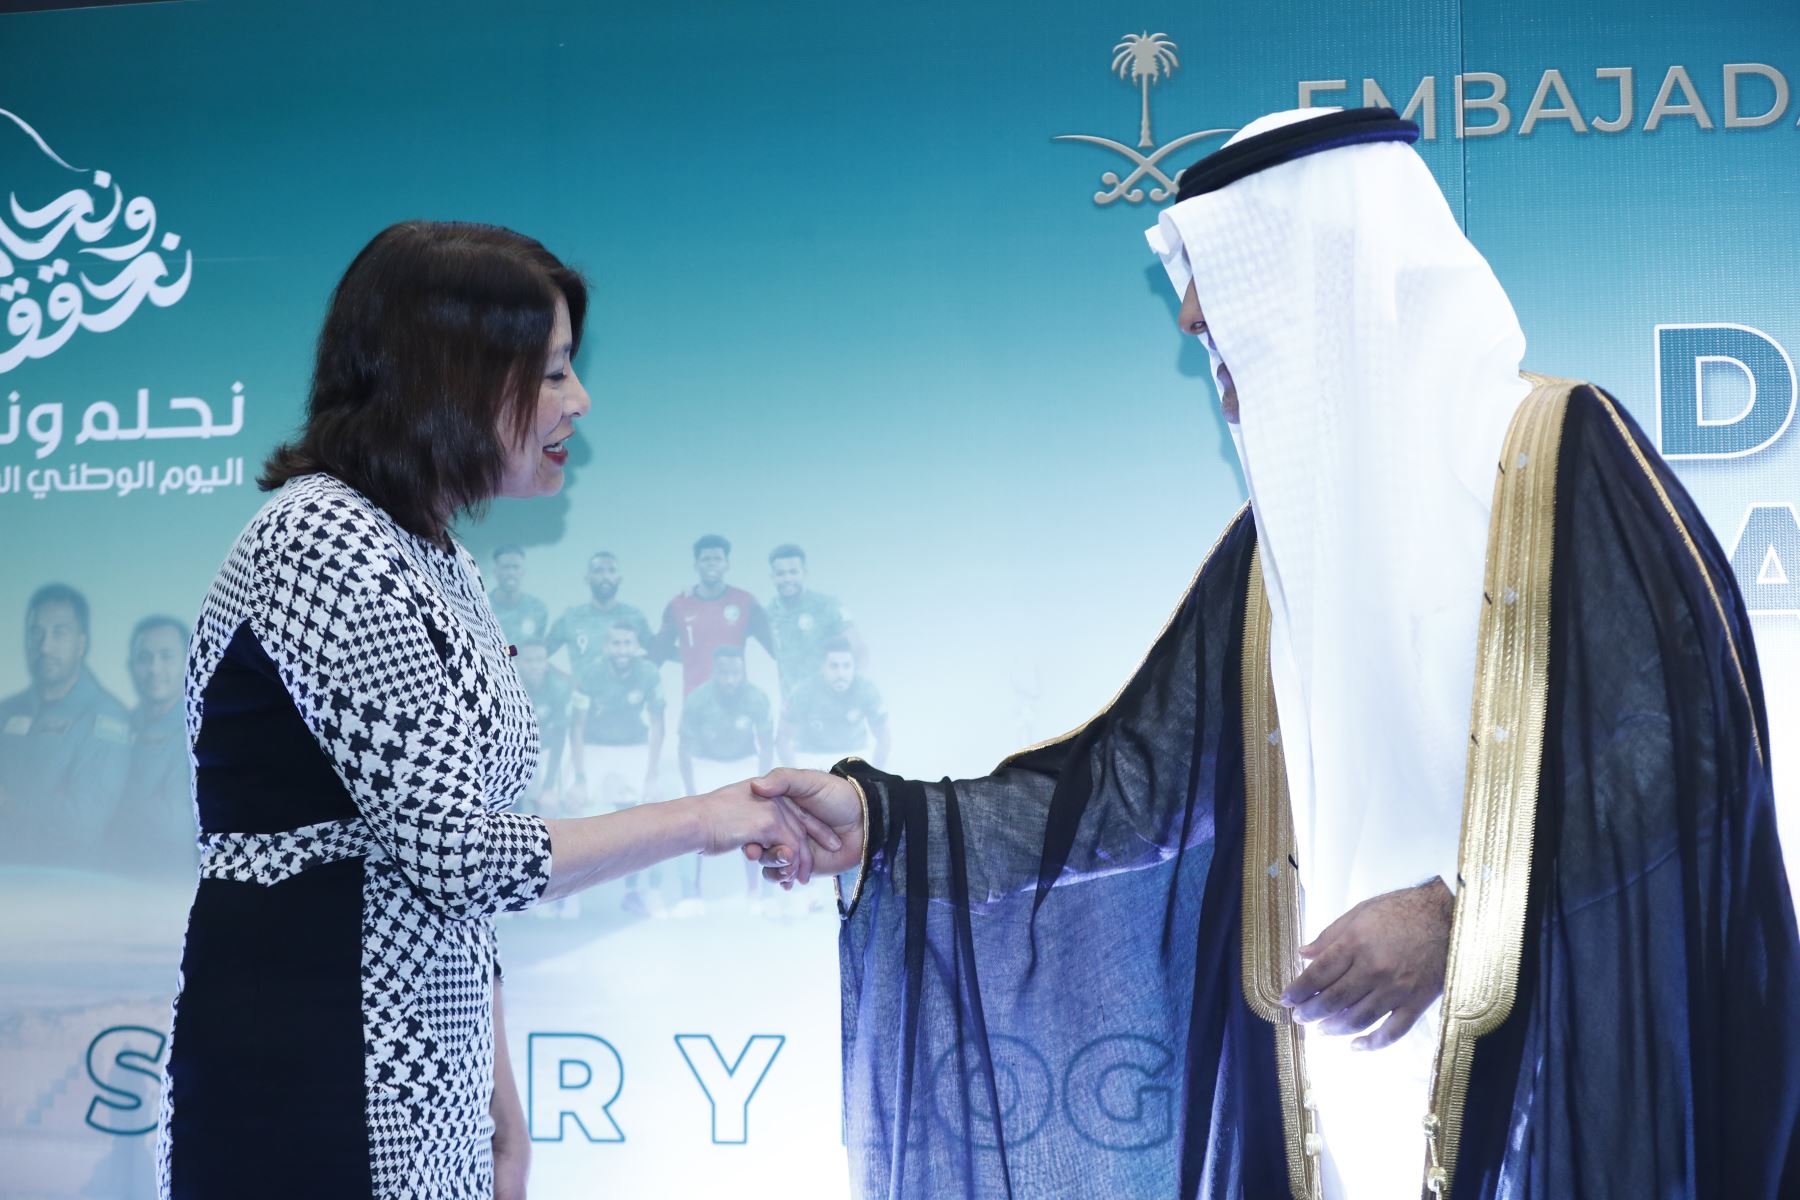 La ministra de Relaciones Exteriores, Ana Cecilia Gervasi, participó en la ceremonia especial por el Día Nacional de Arabia Saudita, realizado en el Swissotel. Foto: ANDINA/Daniel Bracamonte